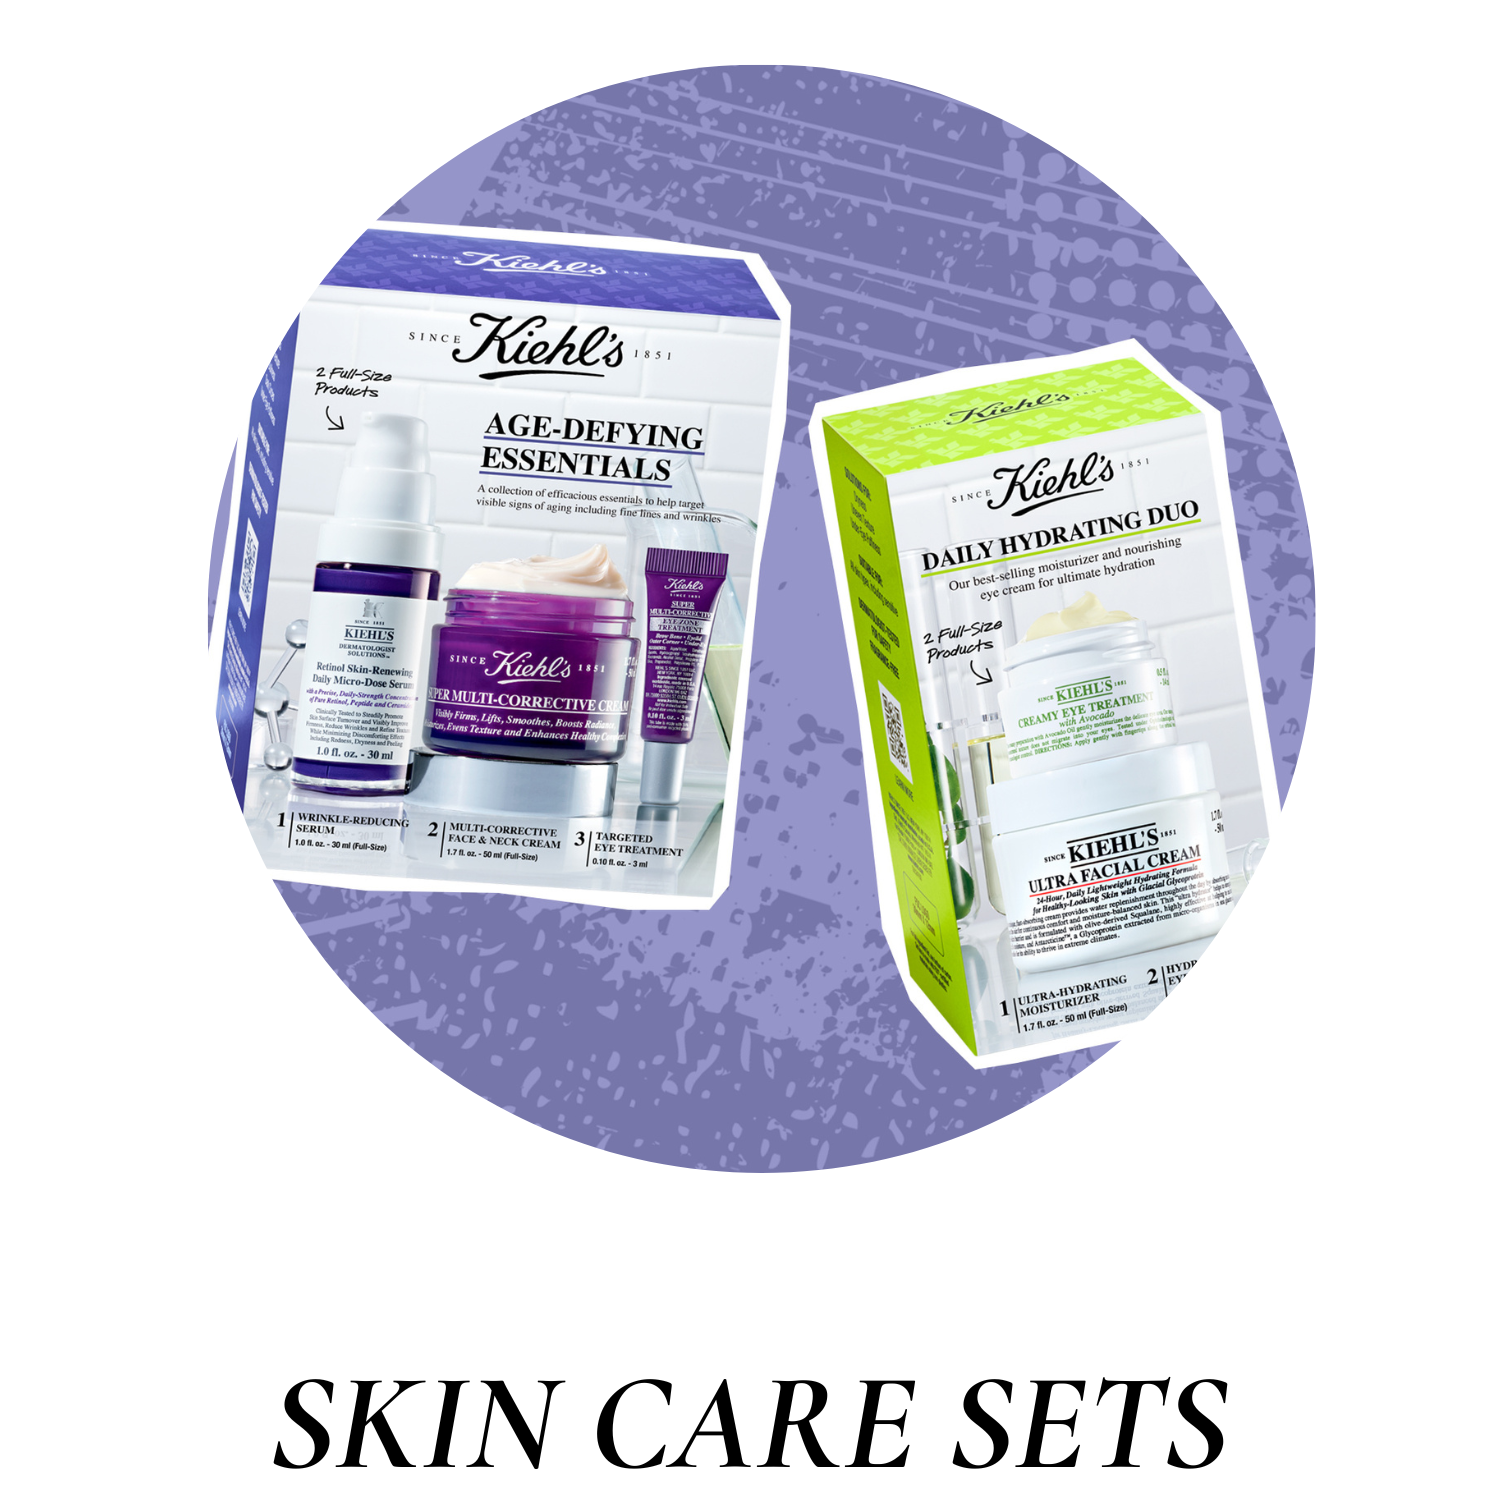 Skin care sets